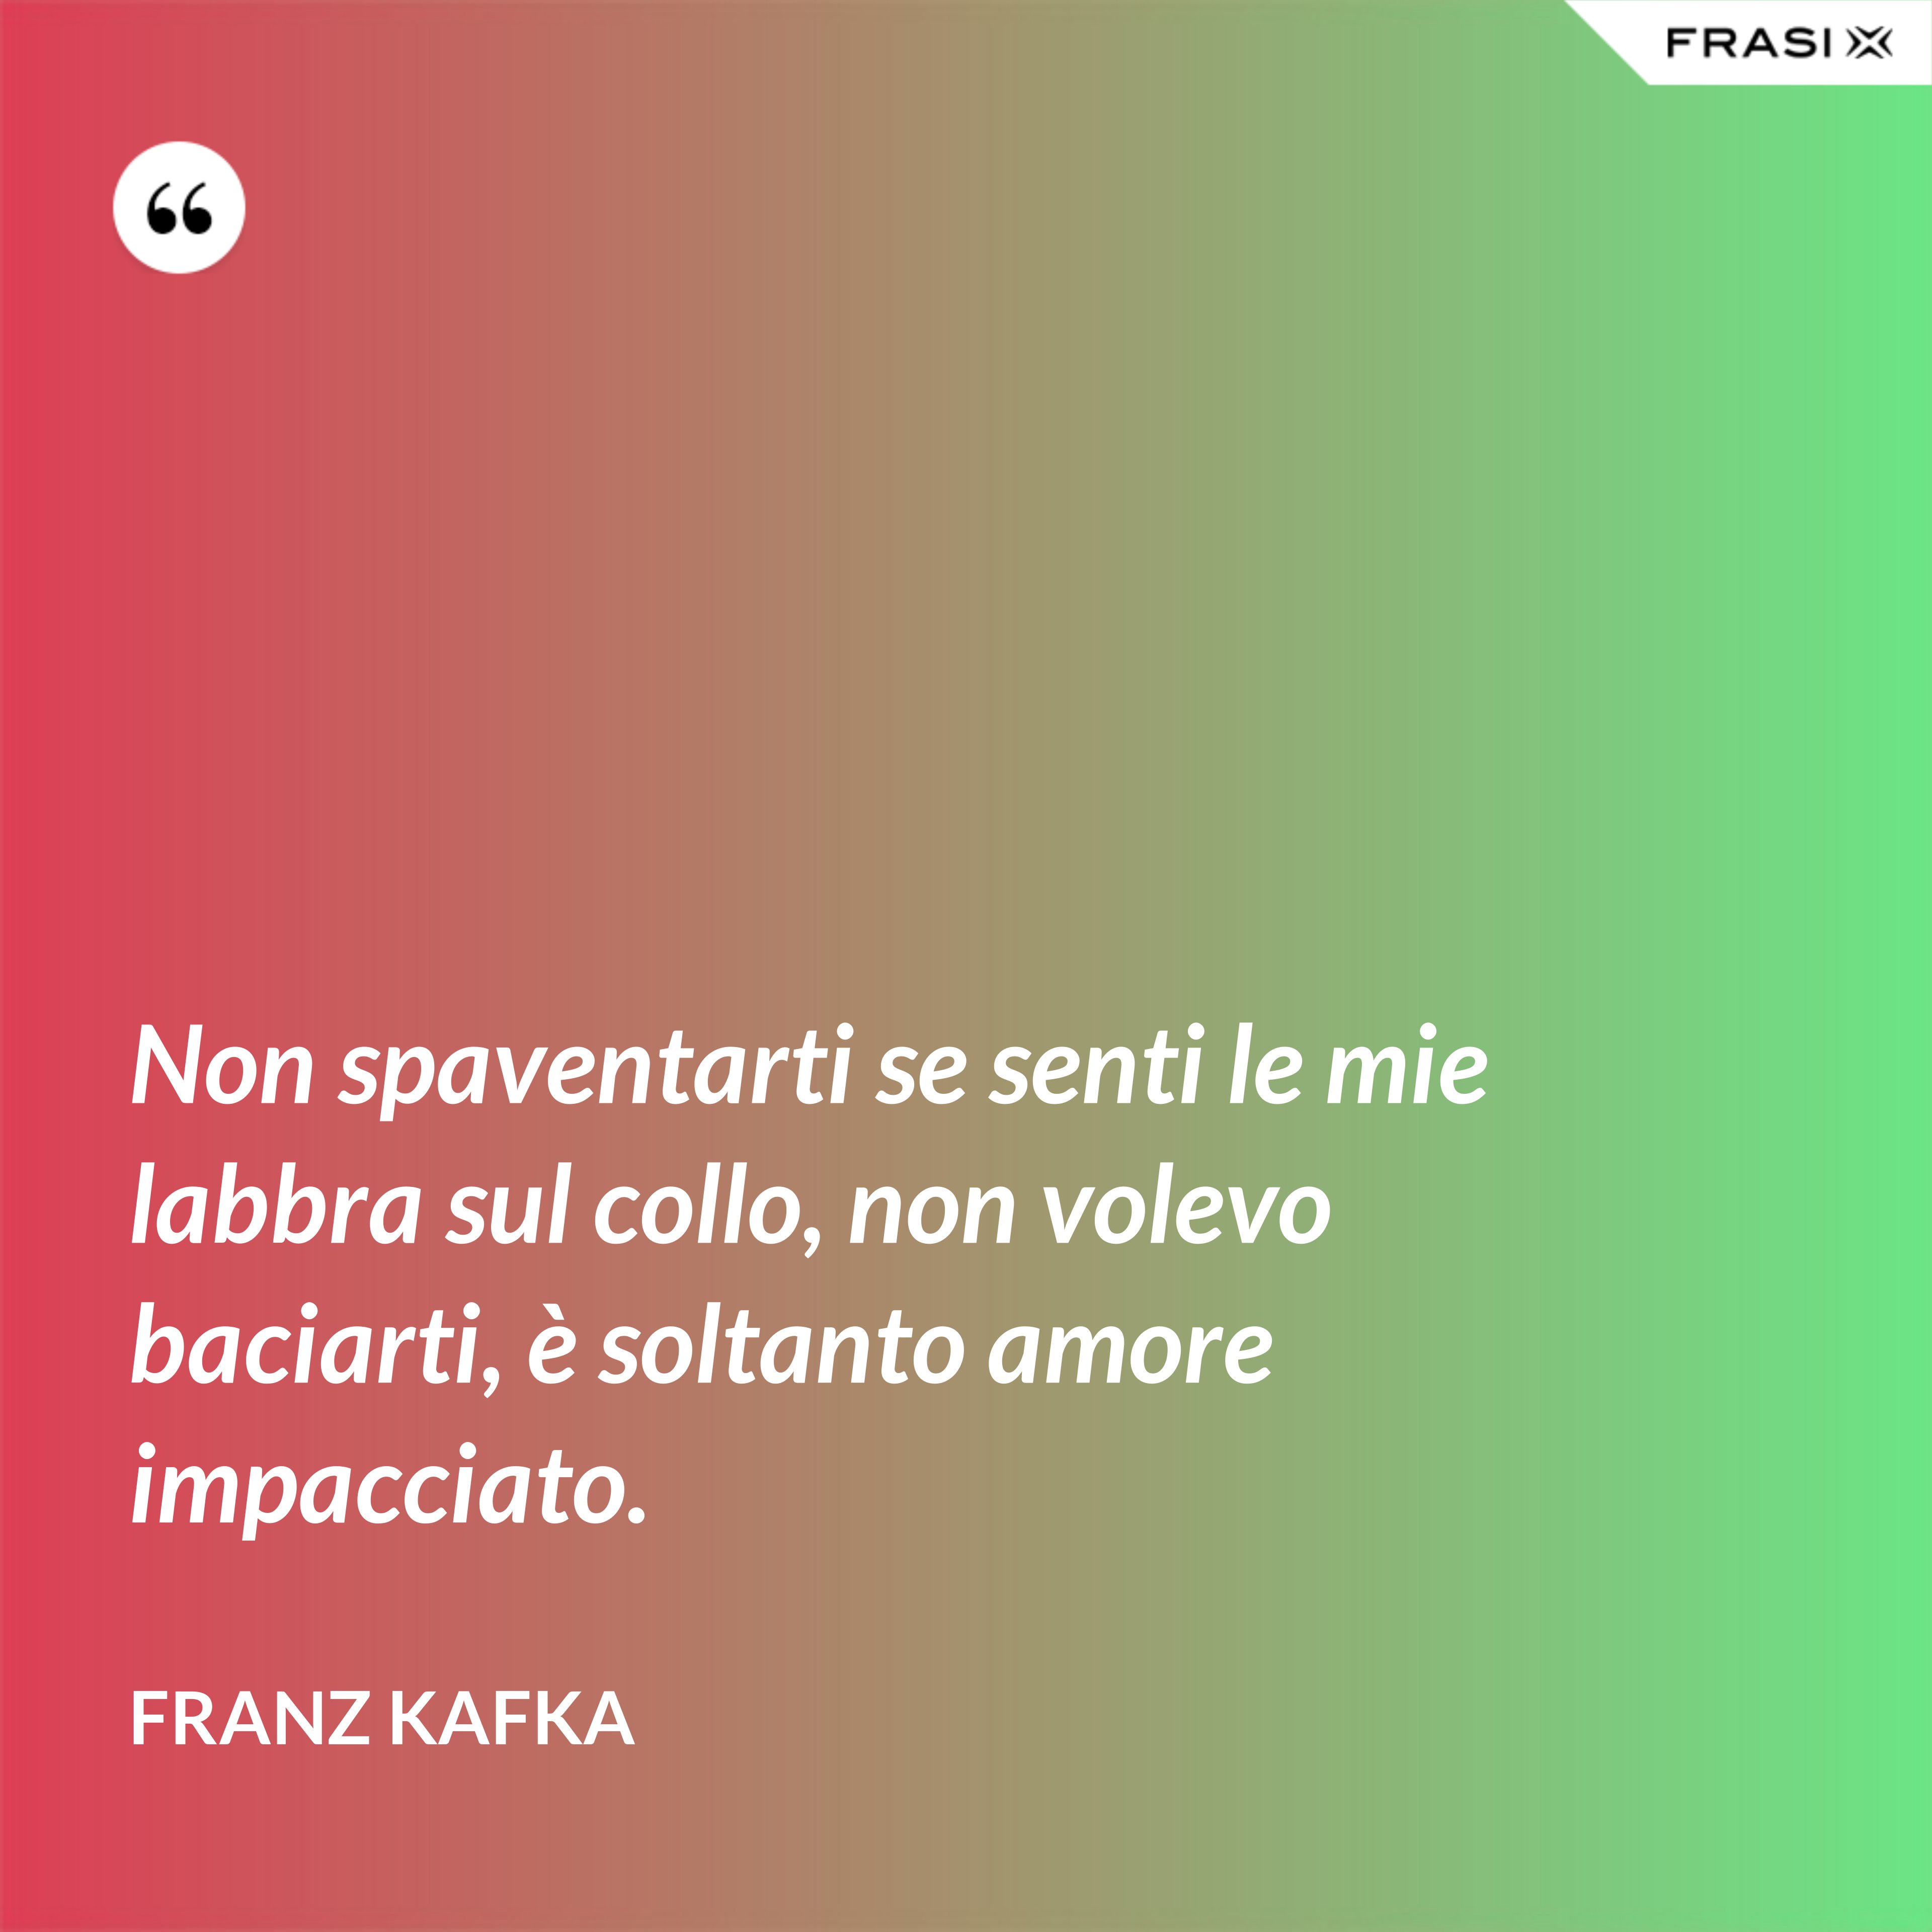 Non spaventarti se senti le mie labbra sul collo, non volevo baciarti, è soltanto amore impacciato. - Franz Kafka